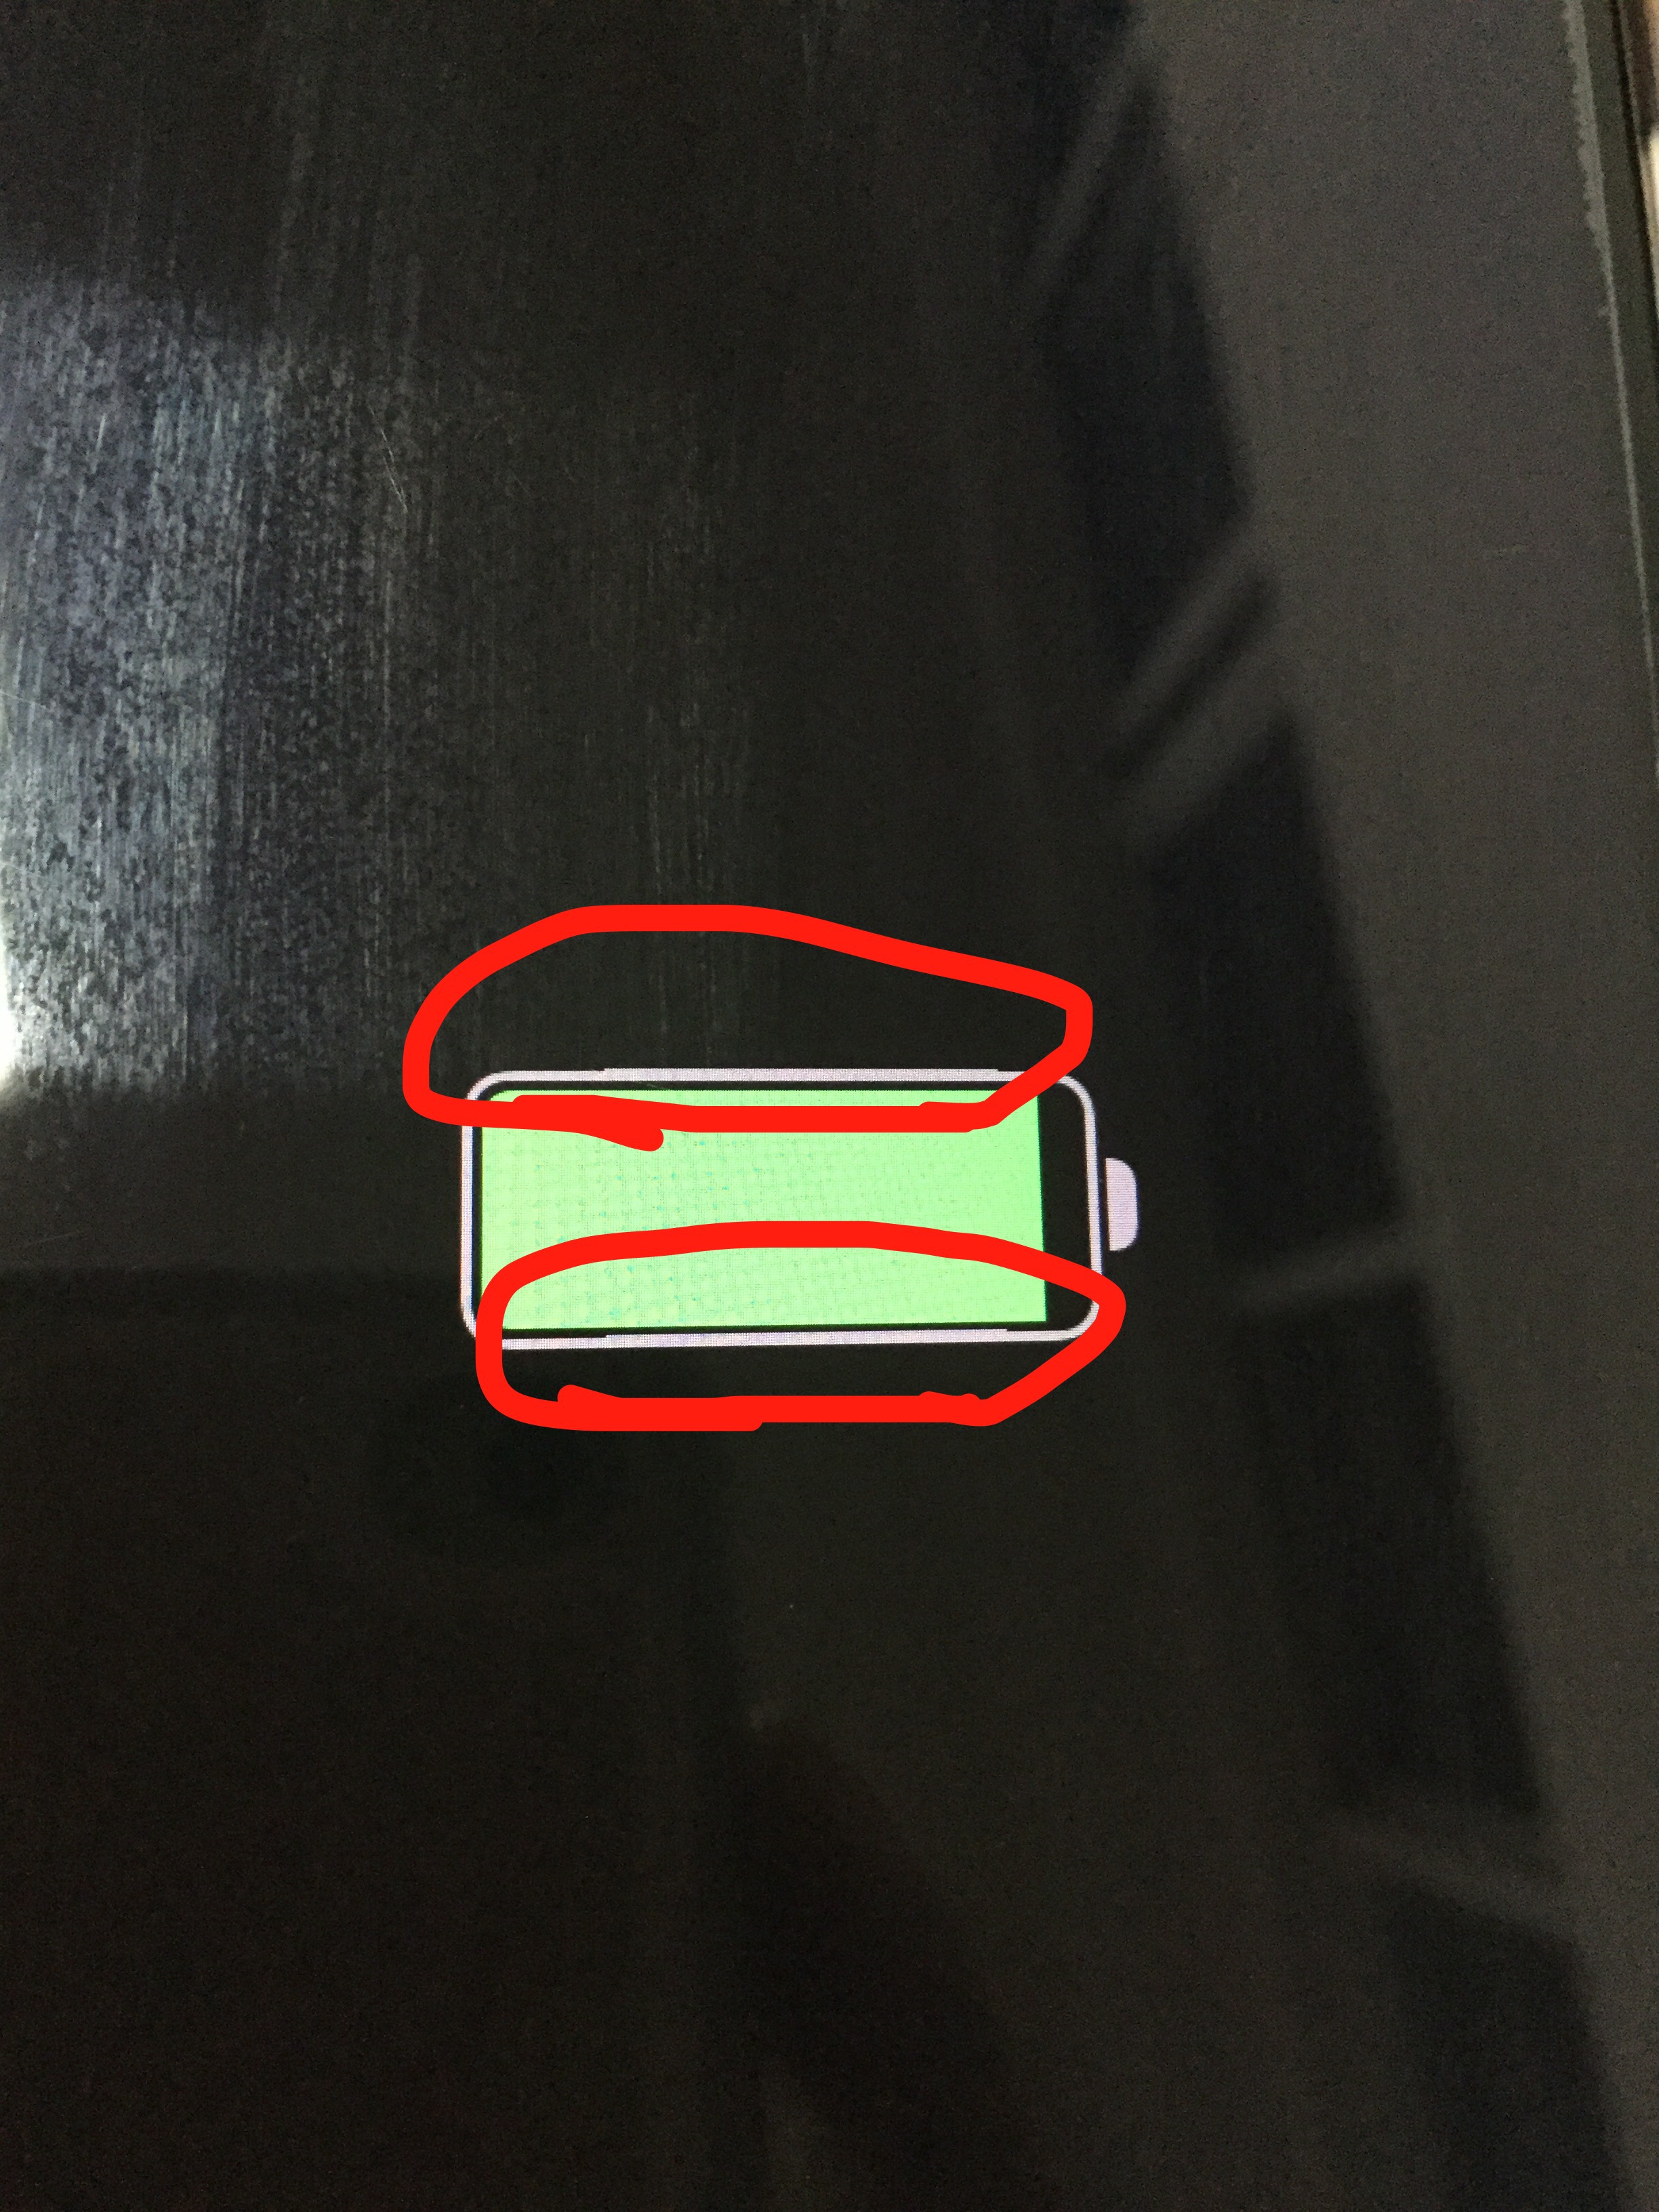 问题问iphone7关机充电电池图标出现问题这是什么问题